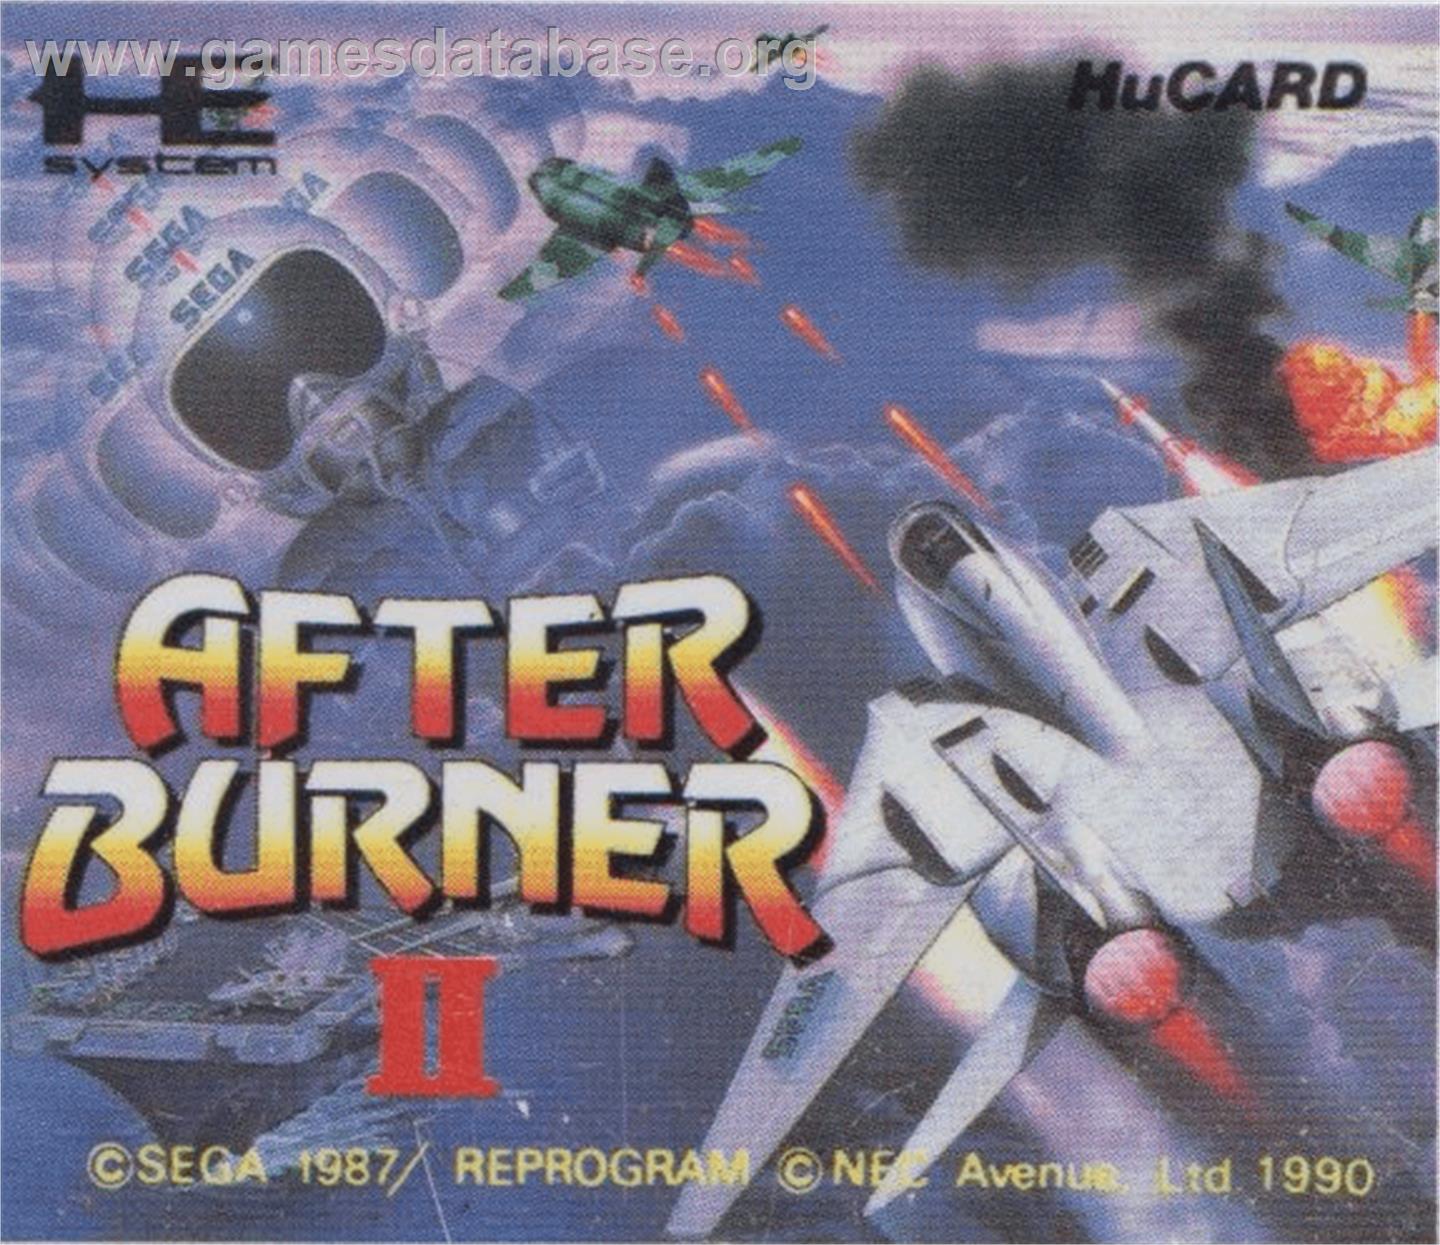 After Burner II - NEC PC Engine - Artwork - Cartridge Top